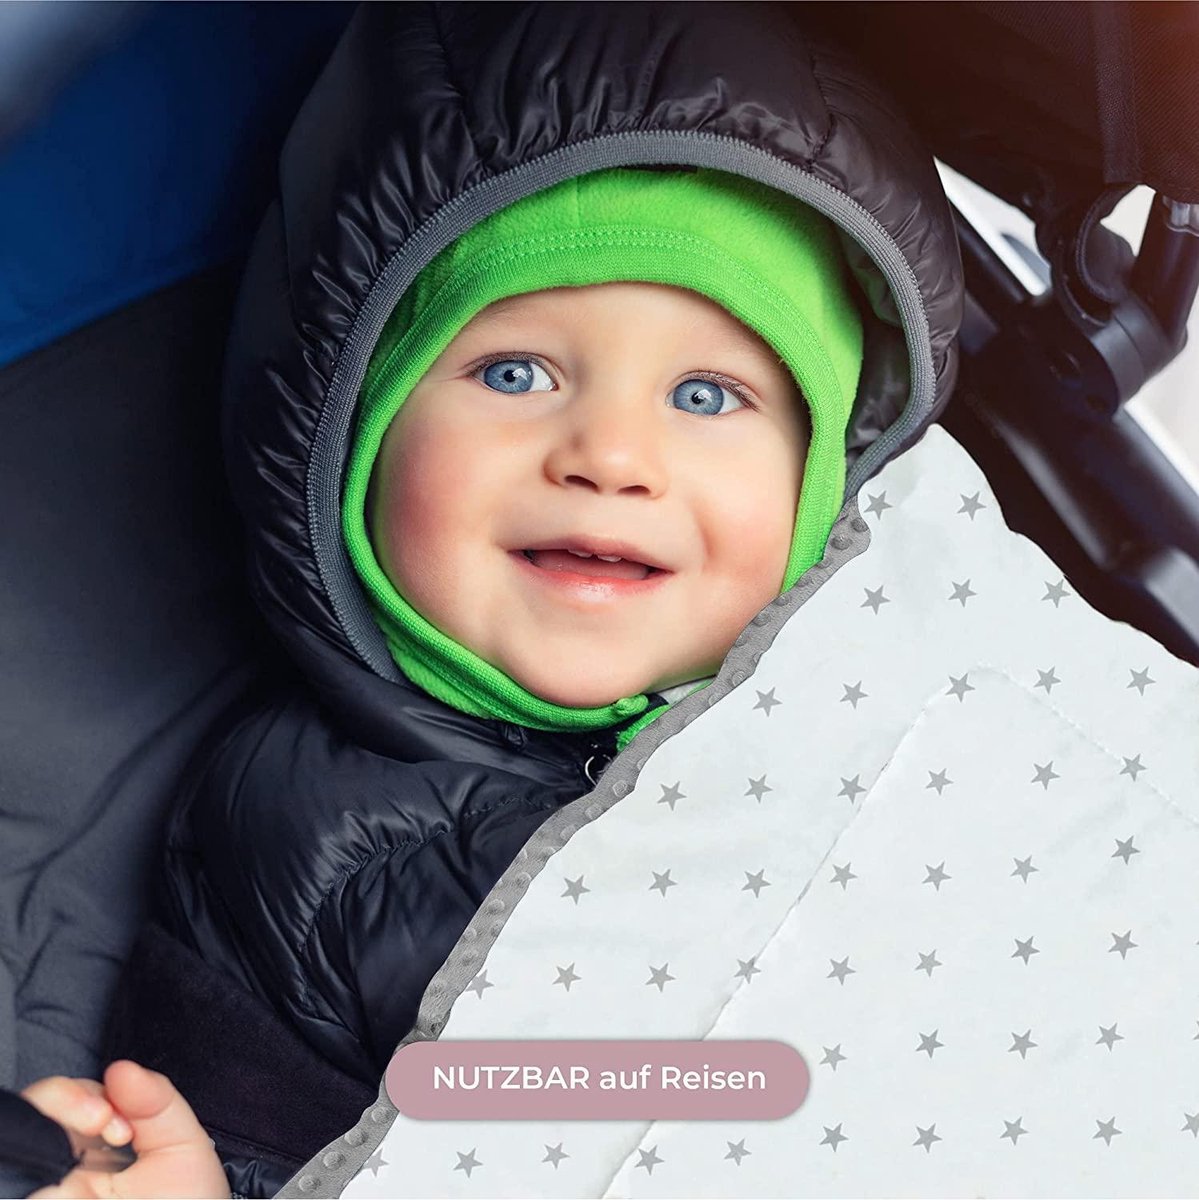 Couverture - couverture bébé cône pour bébé couverture bébé 80 x 80 cm  (gris)